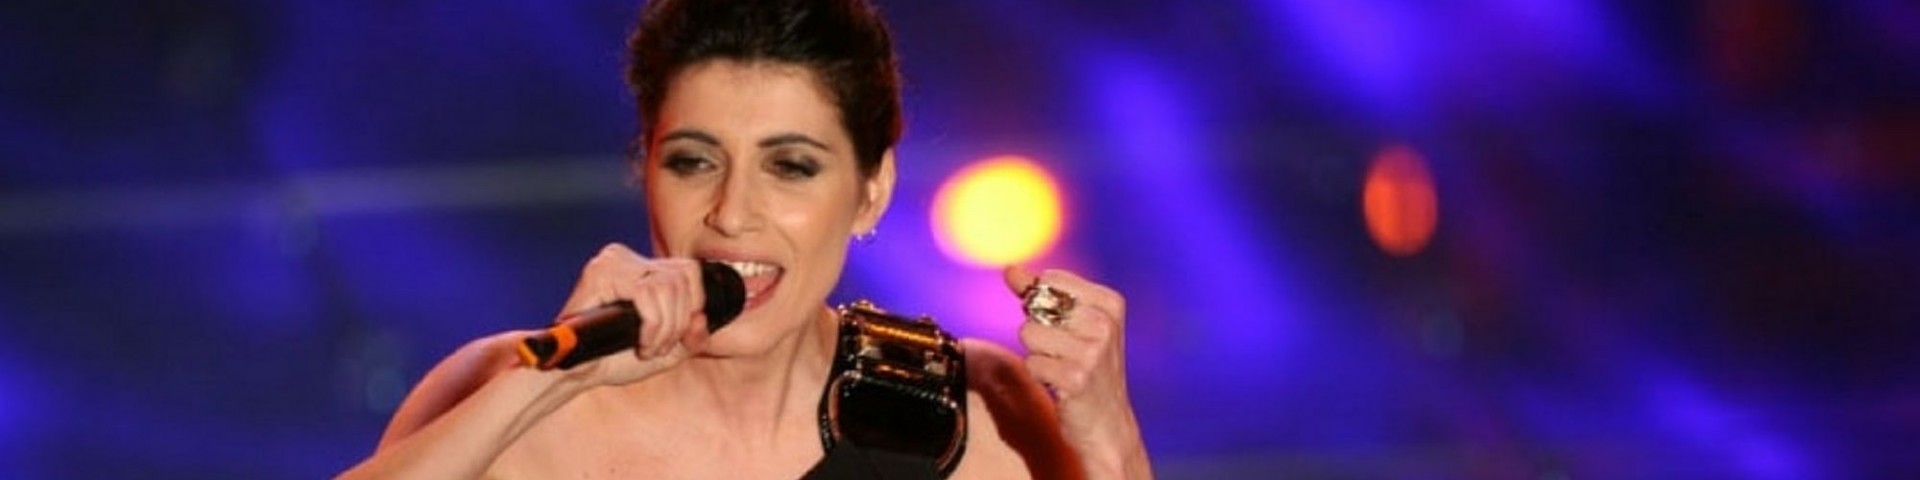 Sanremo 2019: confermati Andrea Bocelli, Giorgia ed Elisa come ospiti